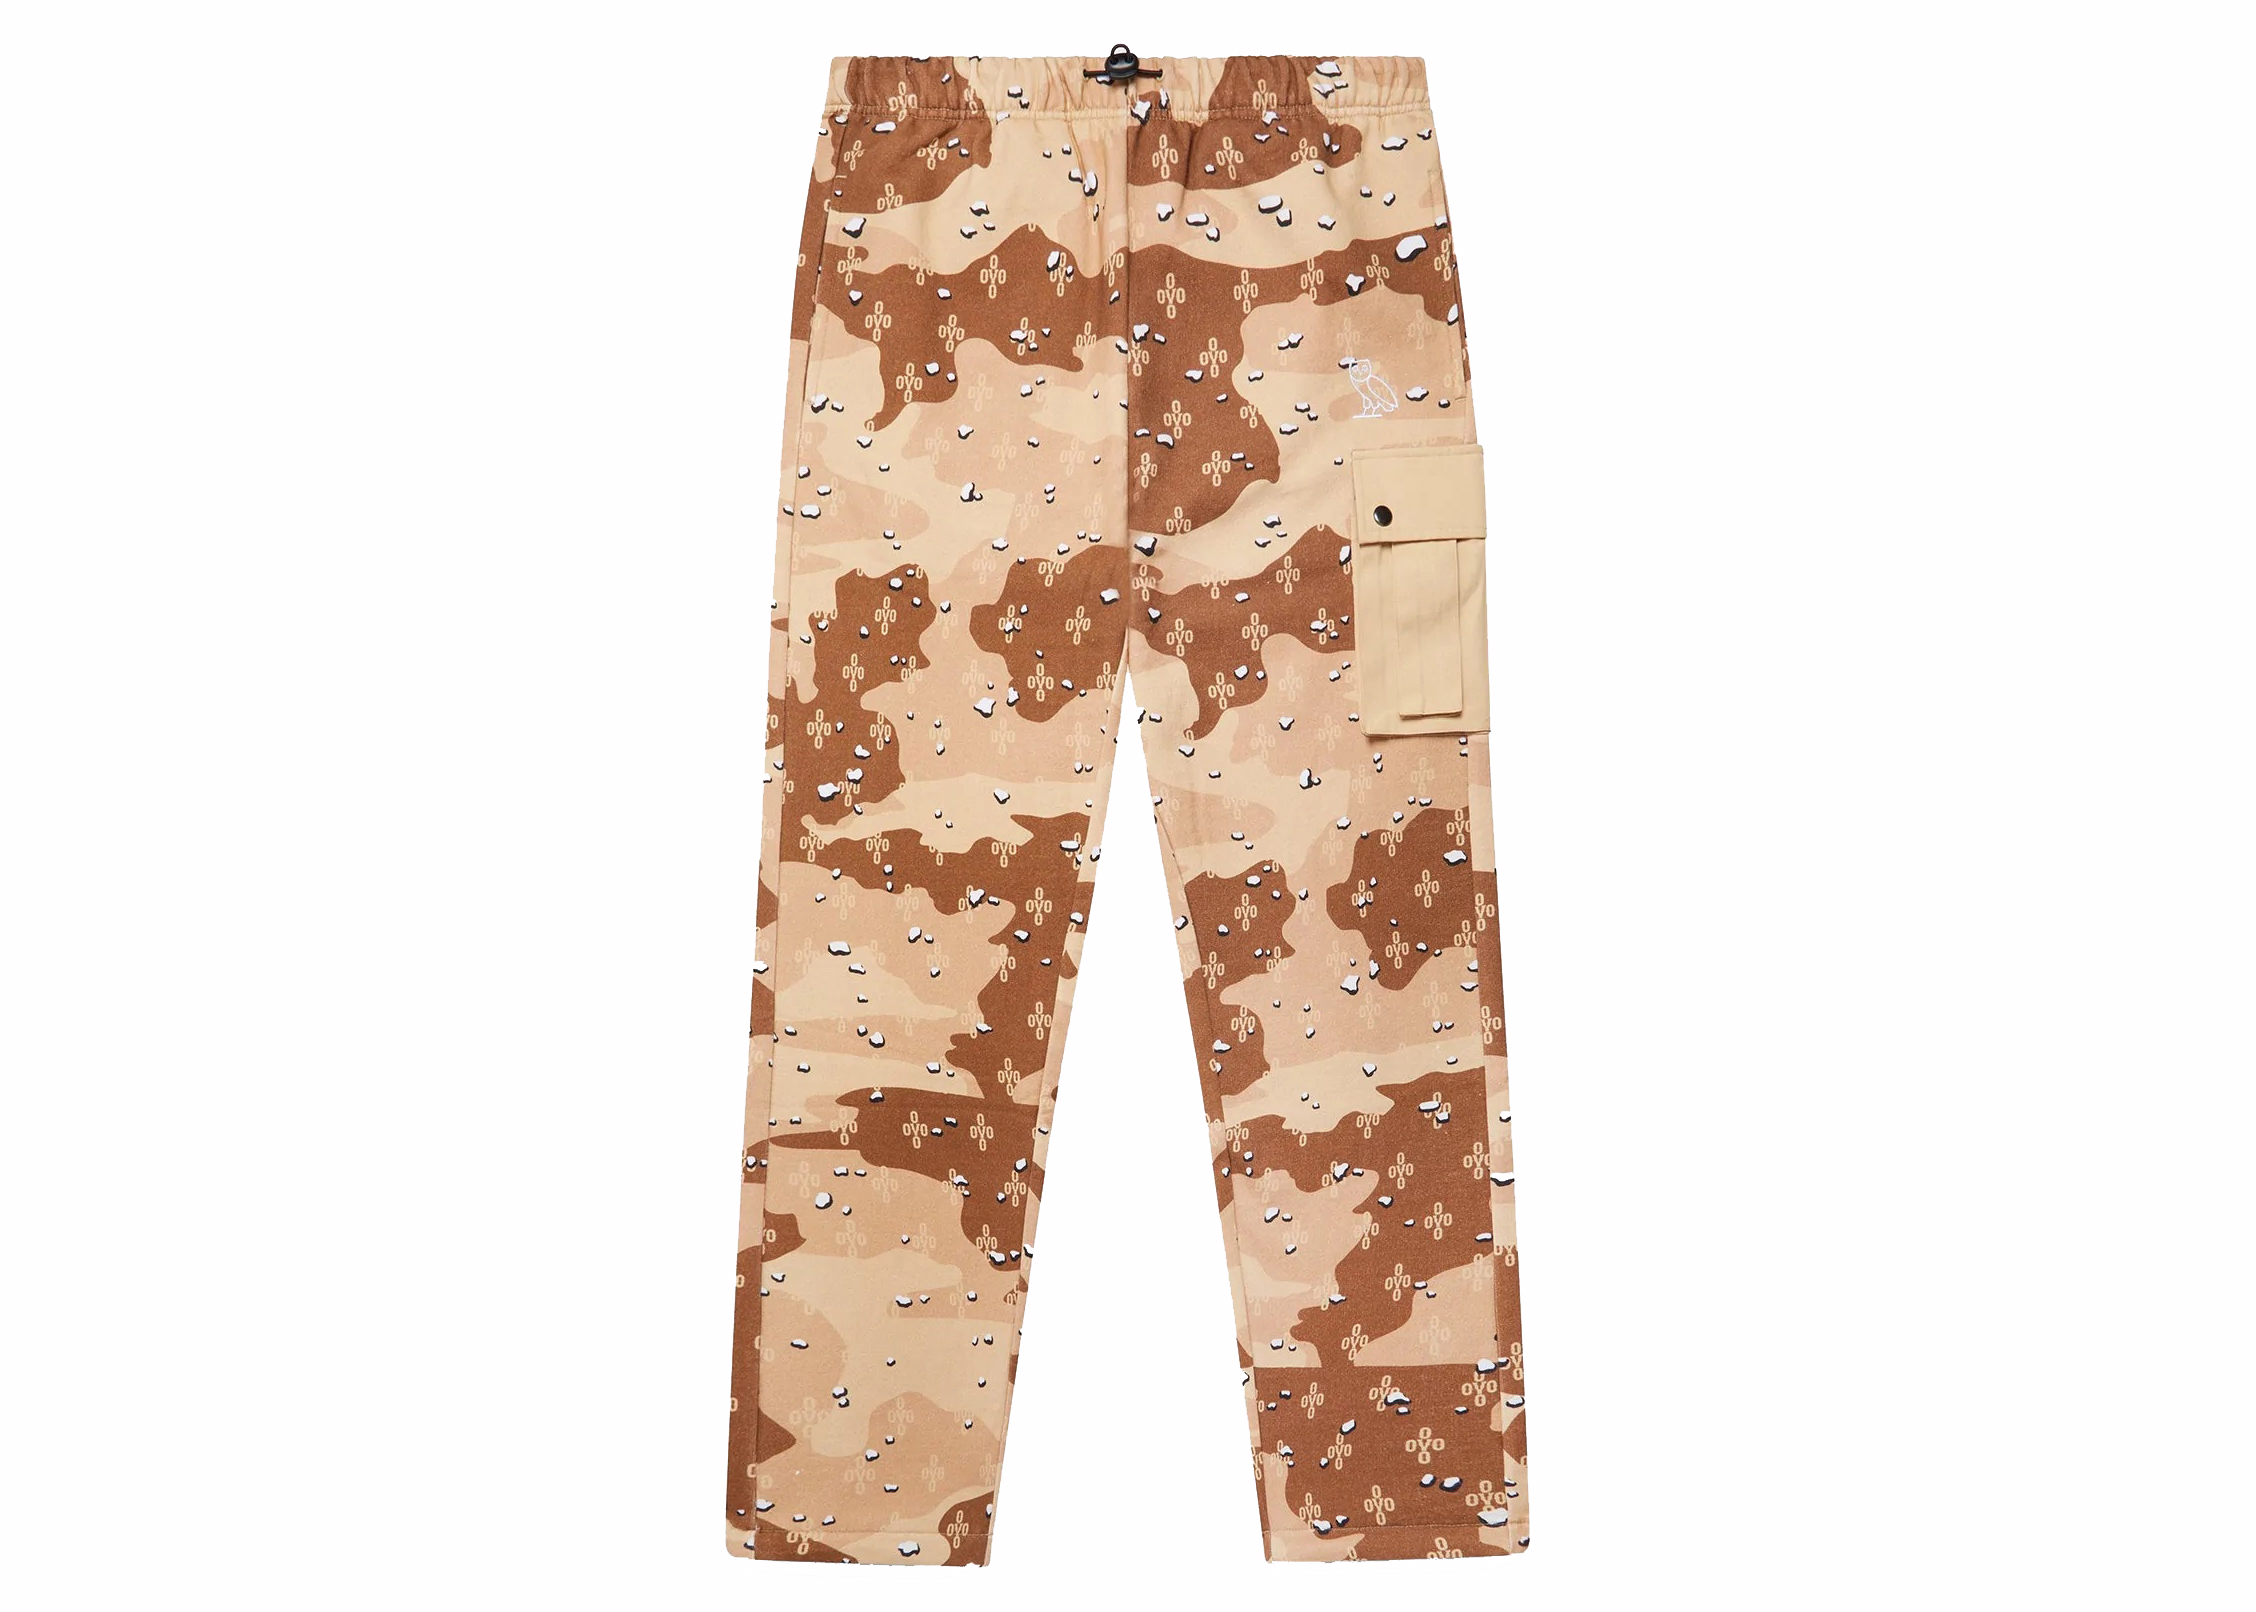 US Military DCU Tri-Color Desert Camo Trousers Combat Uniform Pants |  Uniform Trading Company